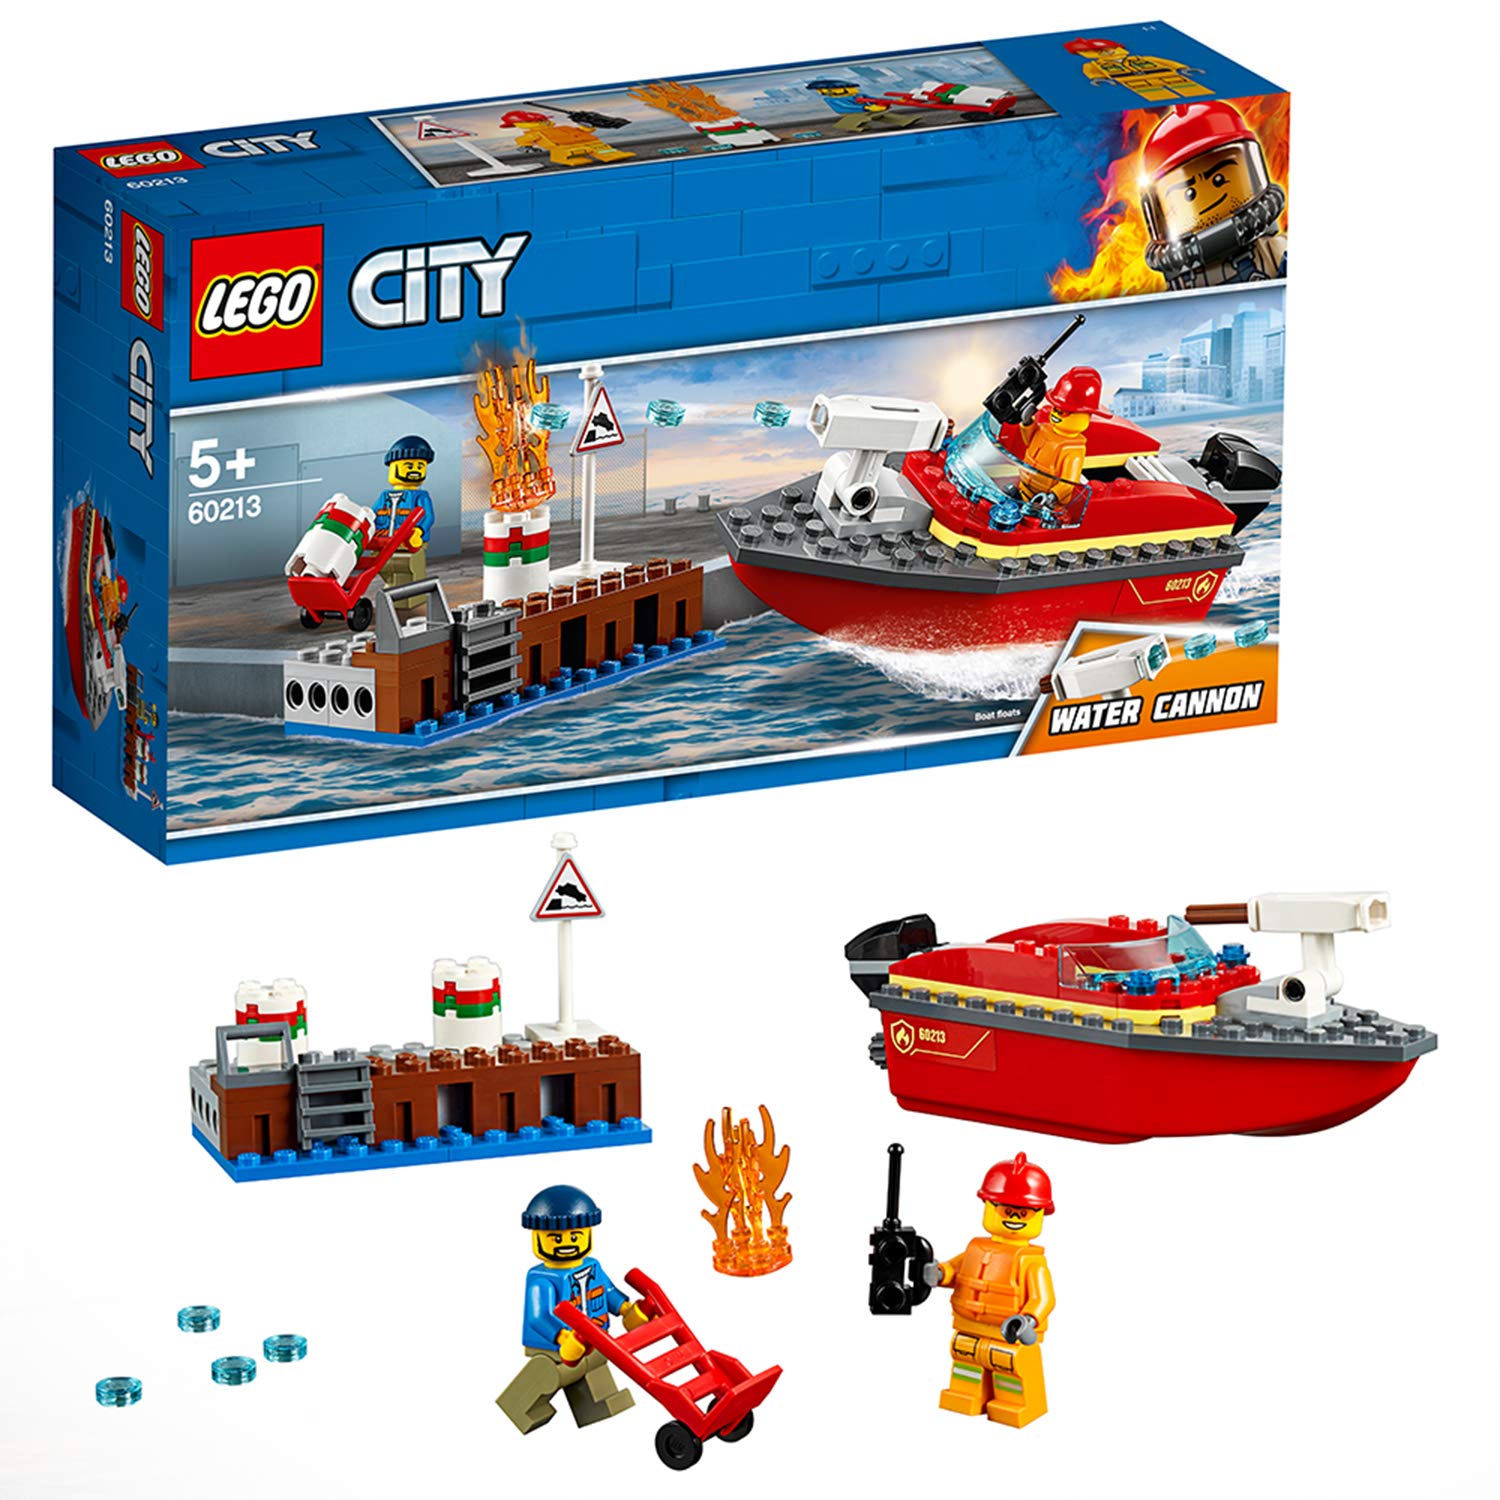 Lego City 60213 Harbour Fire Brigade